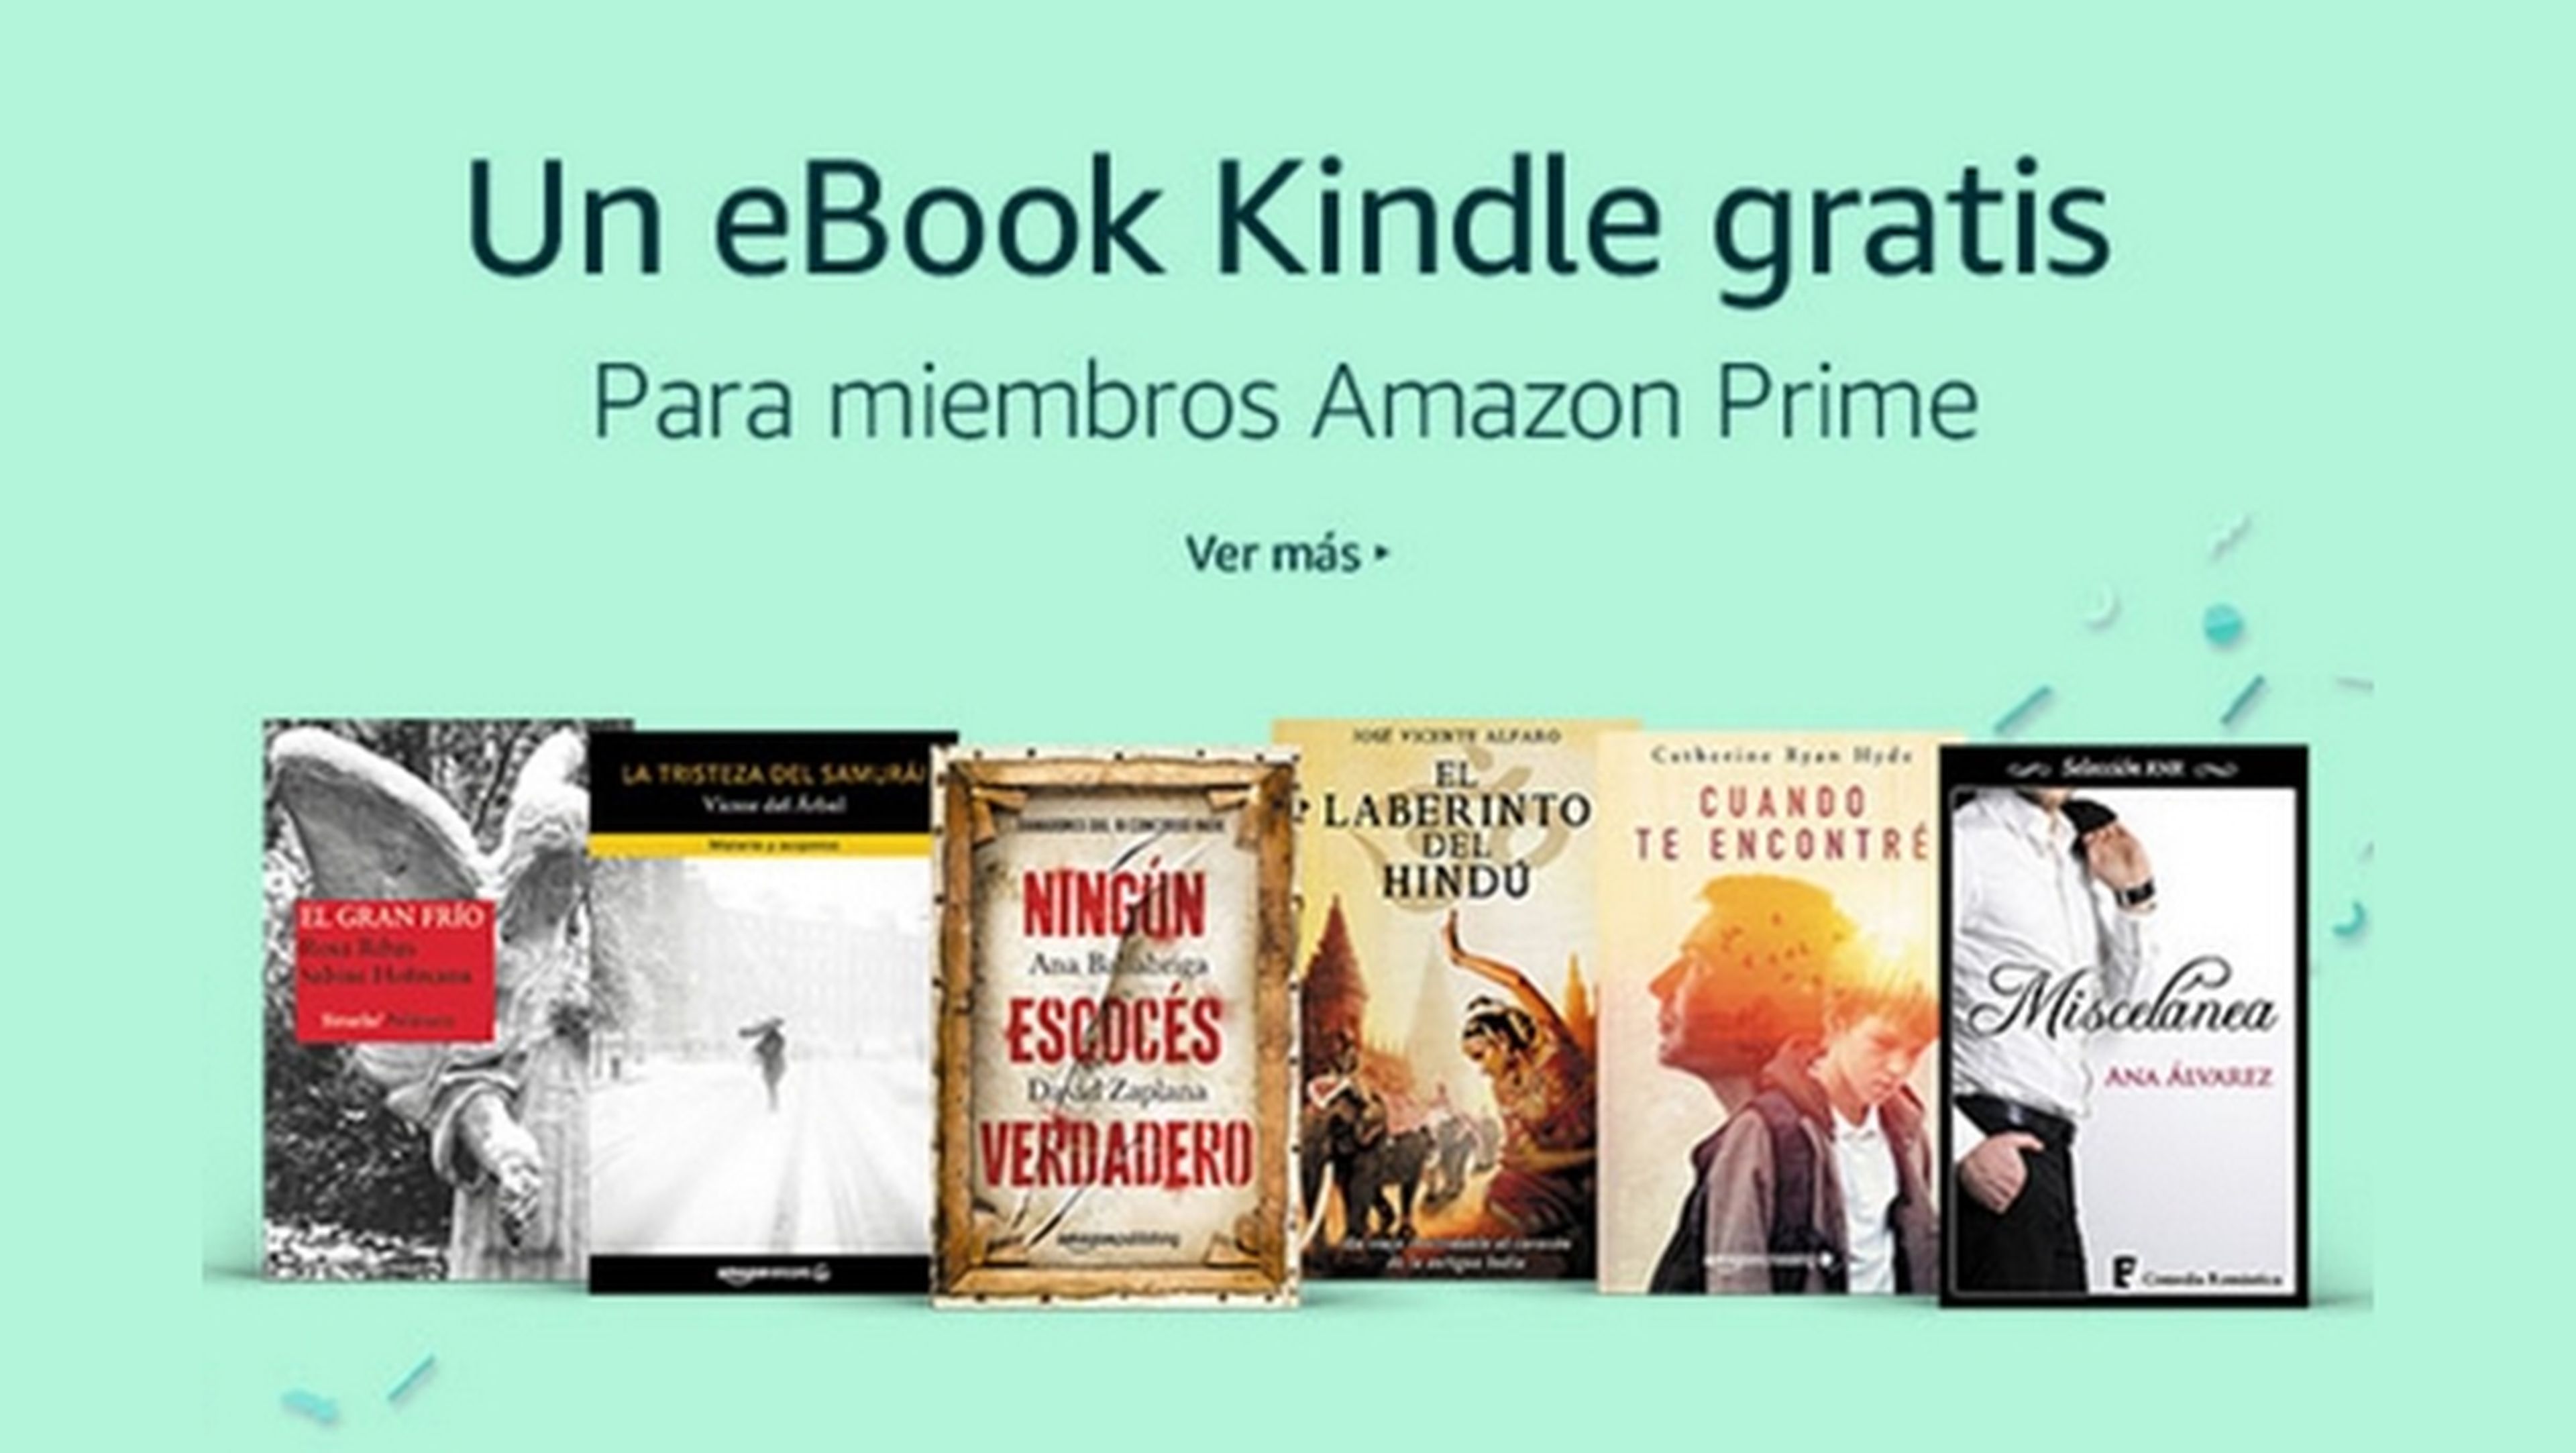 Amazon regala un ebook gratis como adelanto del Prime Day 2017